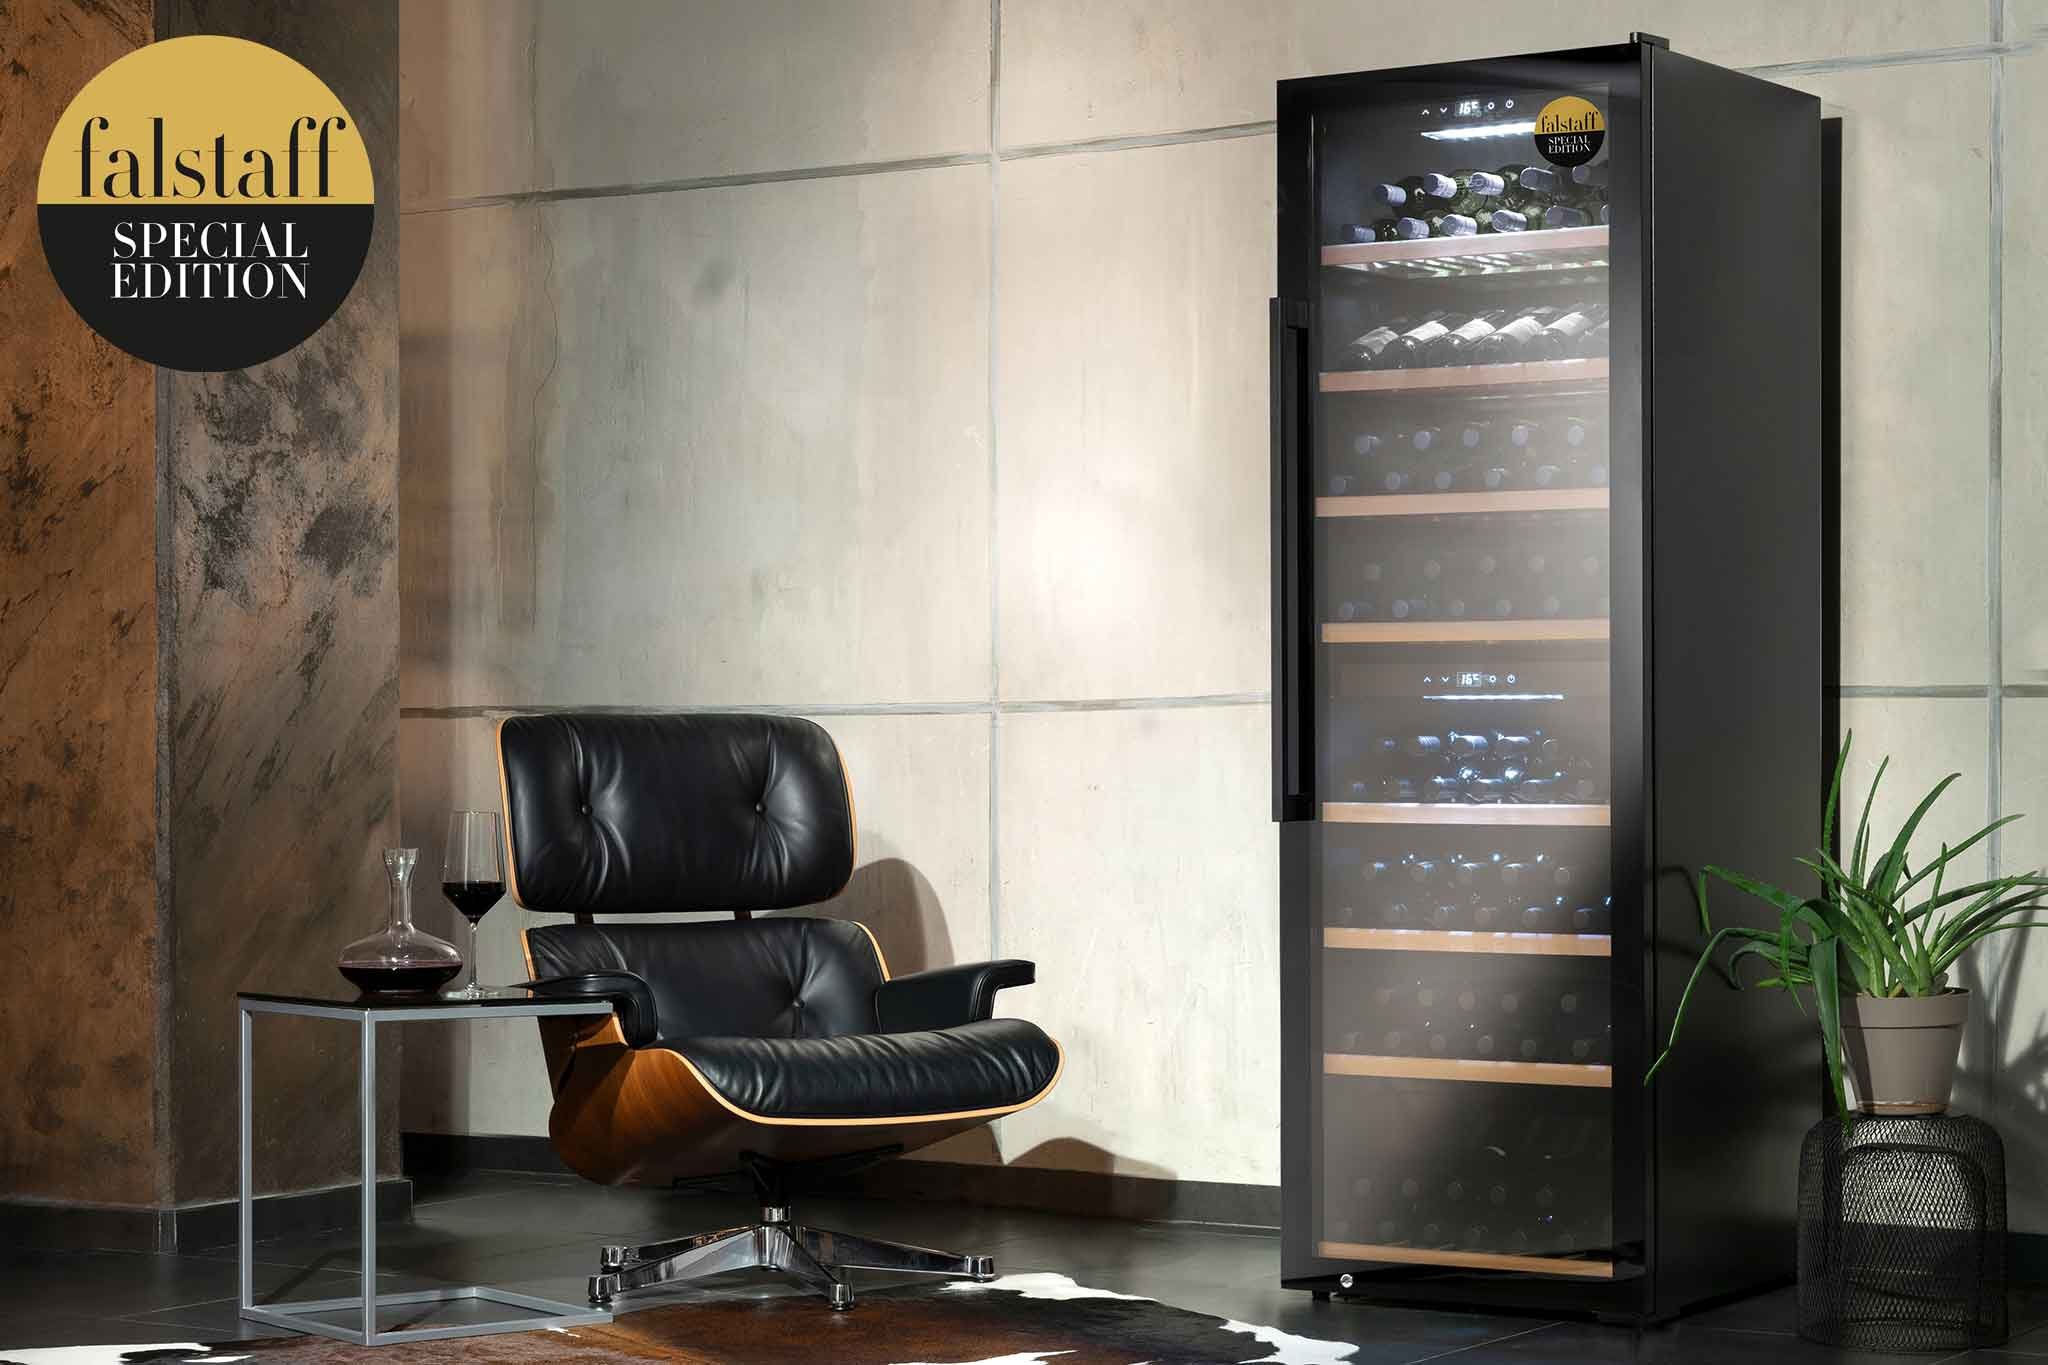 Die Weinkühlschränke in der einzigartigen Falstaff-Edition kombinieren edles Design und smarte Technik.